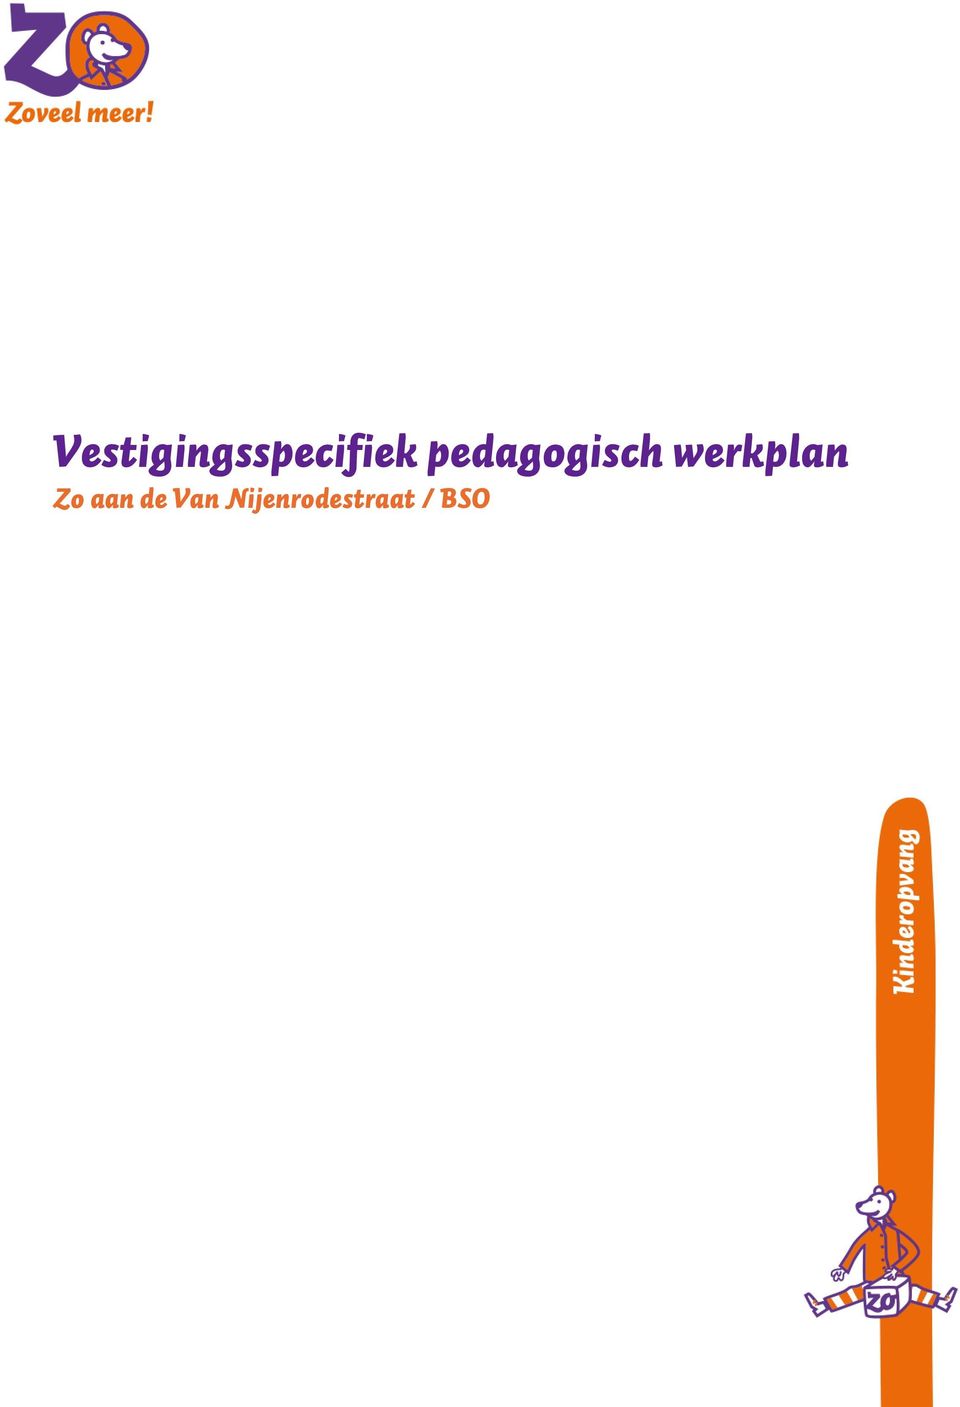 Vestigingsspecifiek pedagogisch werkplan Zo aan de Van Nijenrodestraat /  BSO - PDF Free Download